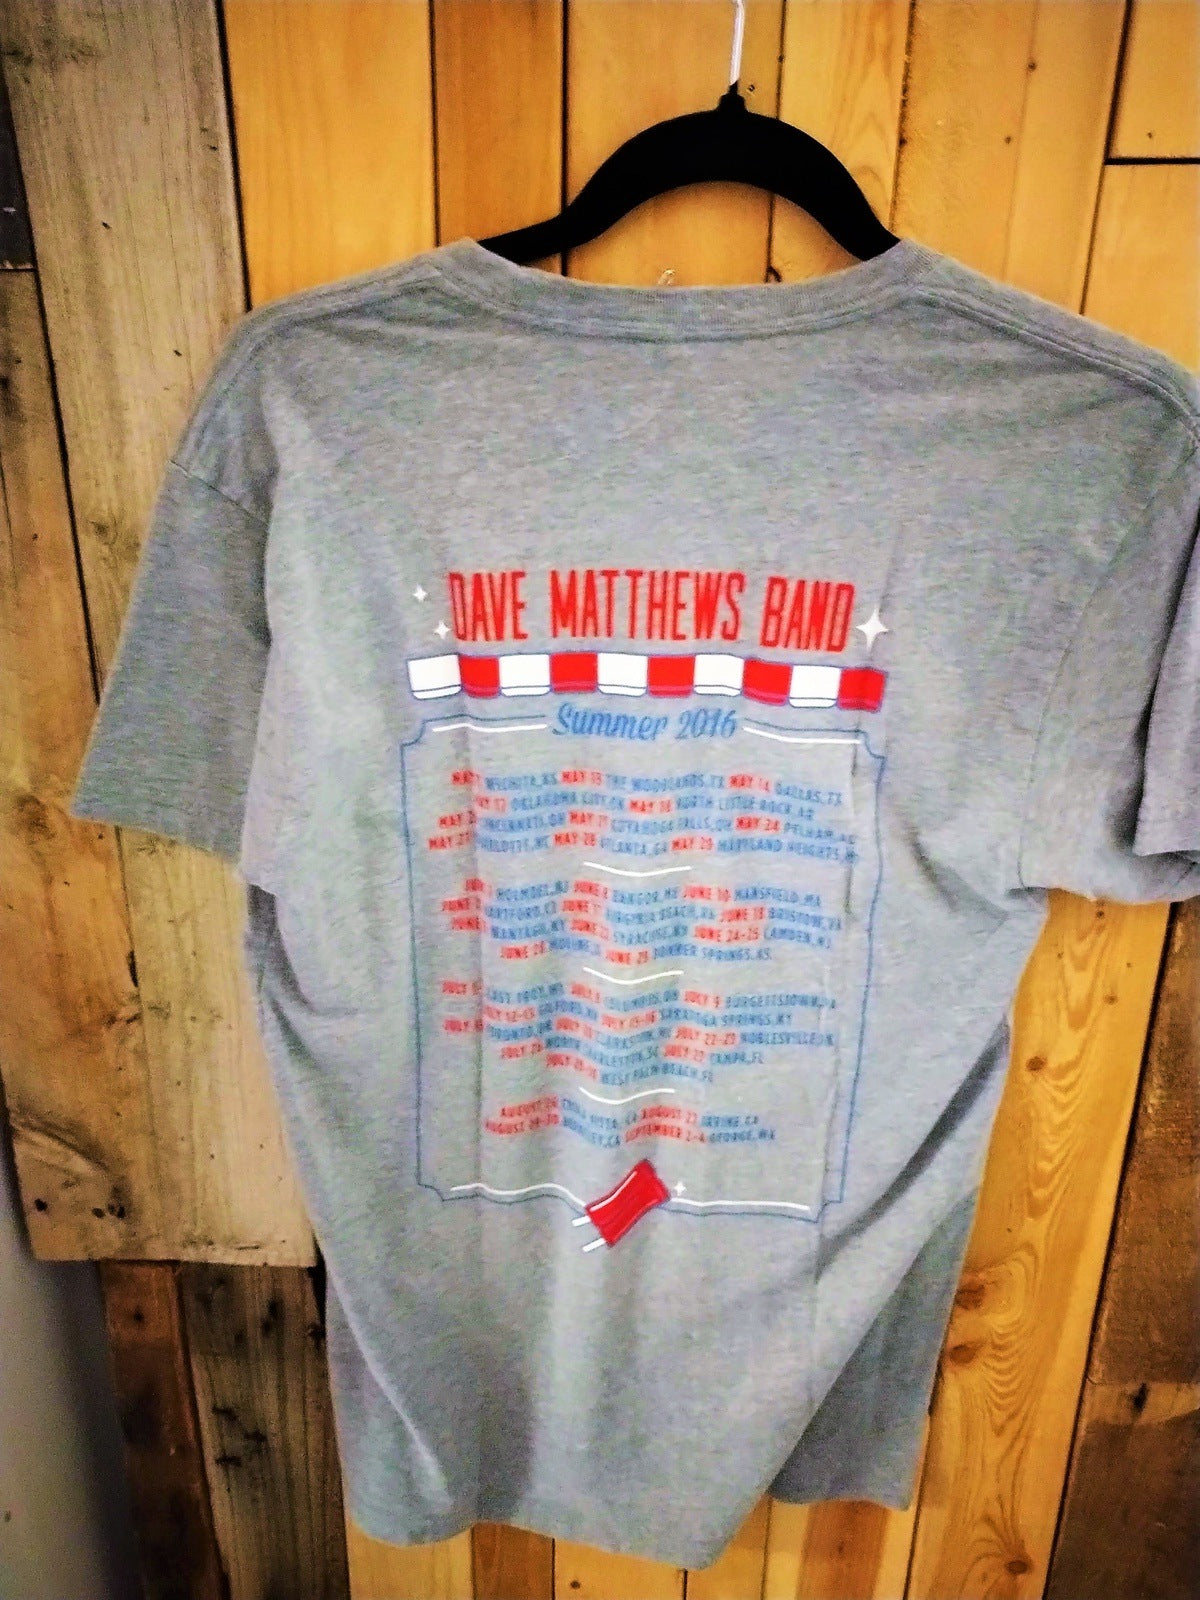 Dave Matthews Band Summer 2016 Tour Tee Shirt Size Small